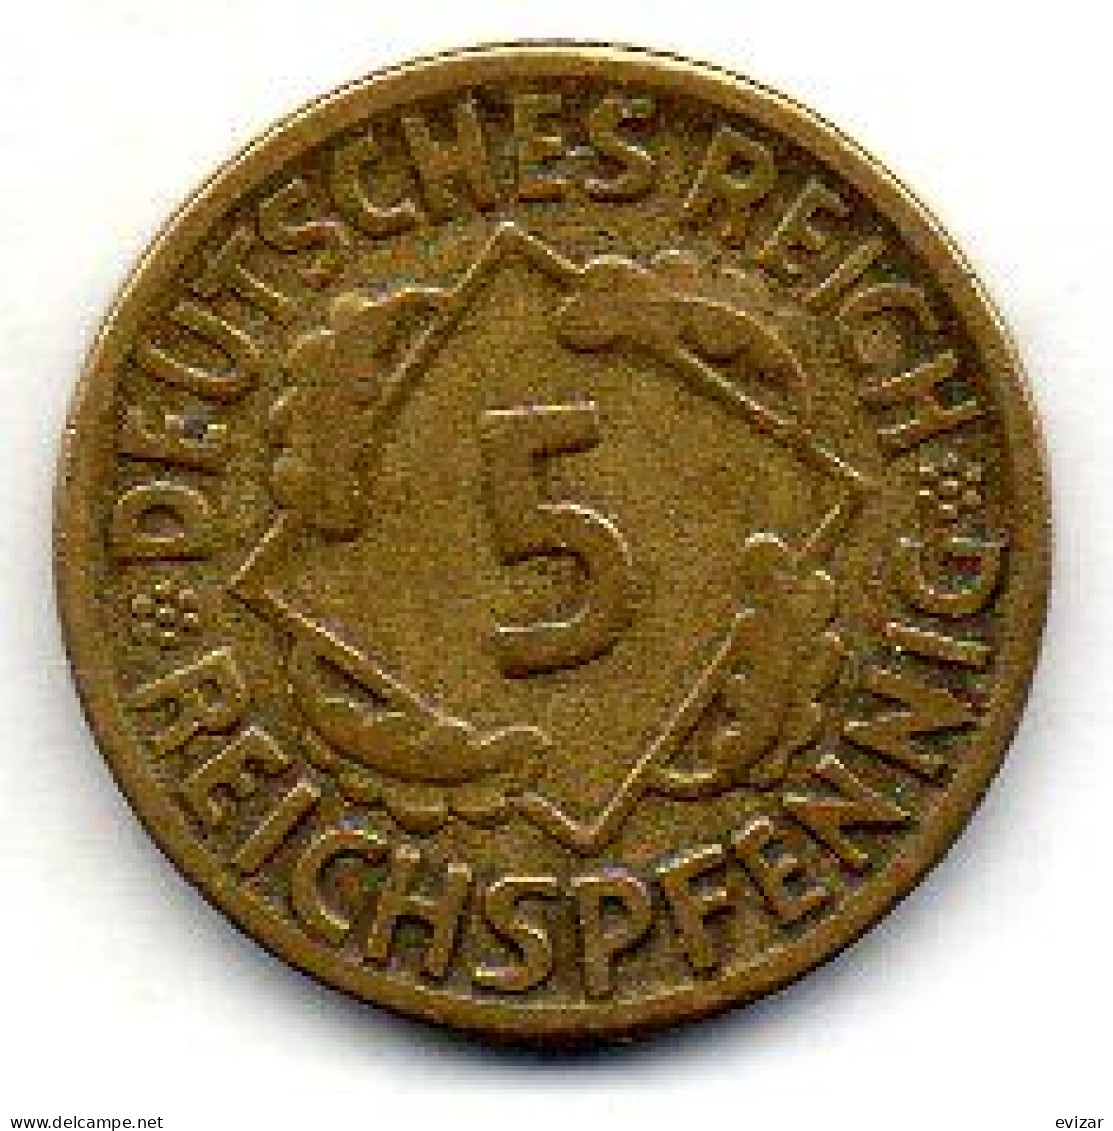 GERMANY - WEIMAR REPUBLIC, 5 Reichs Pfennig, Aluminum-Bronze, Year 1925-D, KM # 39 - 5 Rentenpfennig & 5 Reichspfennig